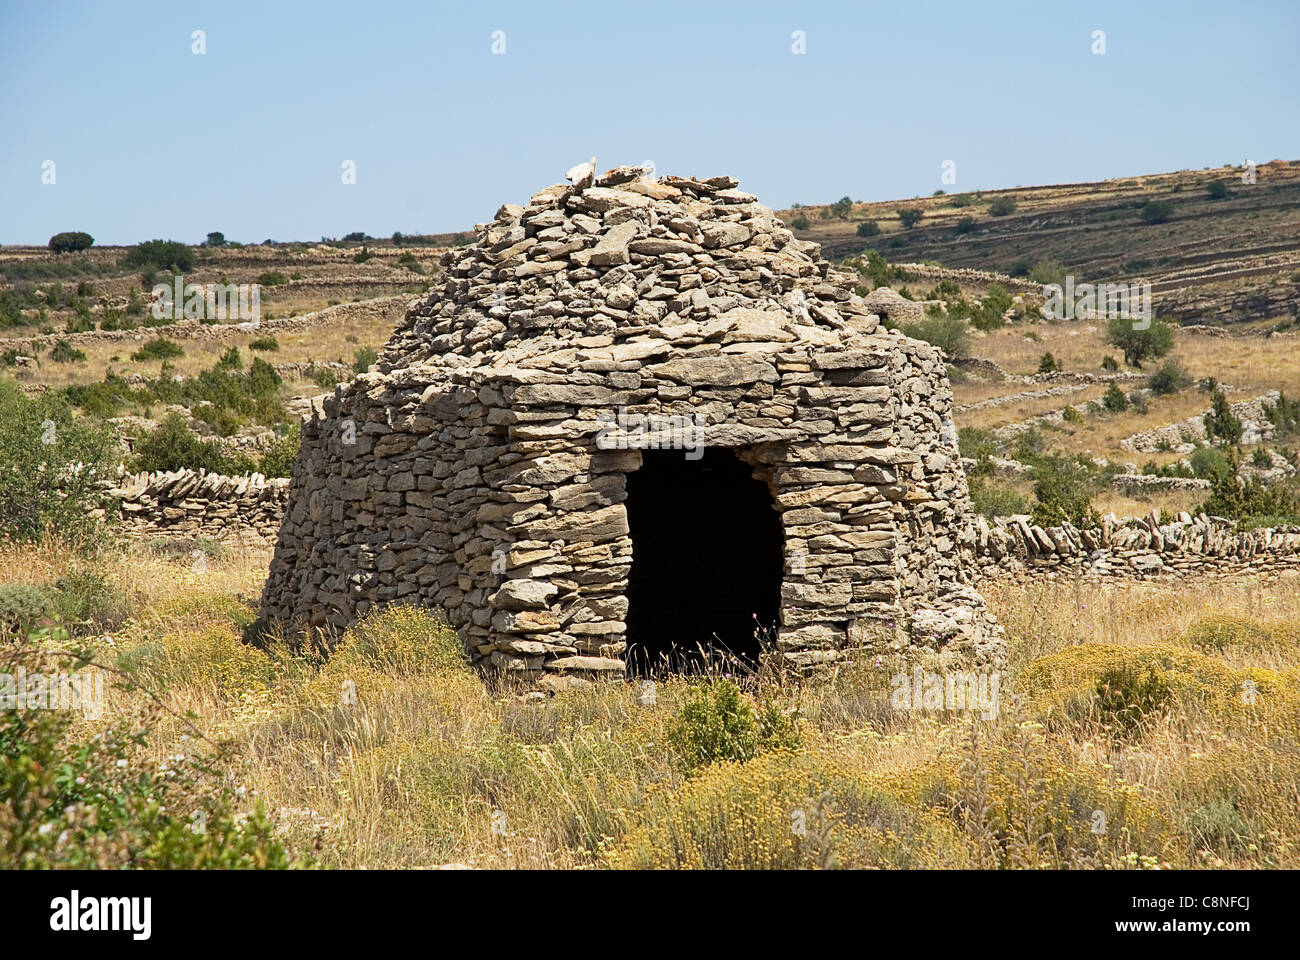 L'Espagne, Maestrazgo, La Iglesuela del Cid, vieille cabane de pierres dans un champ Banque D'Images